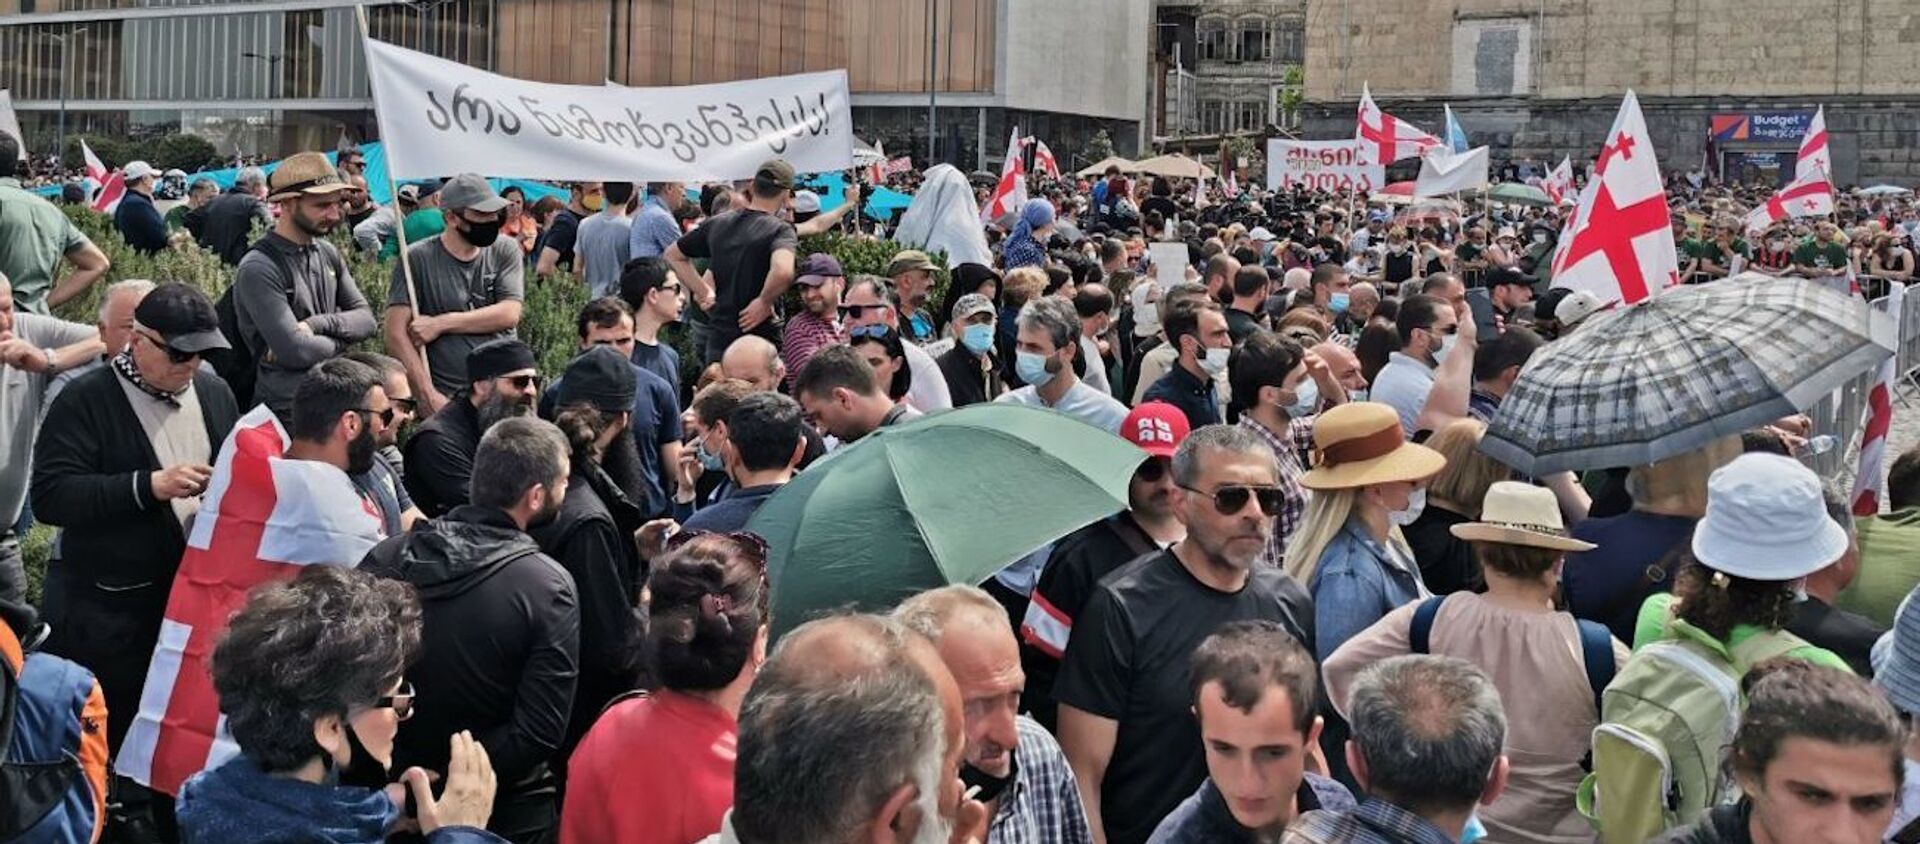 Противники строительства каскада Намахвани ГЭС проводят акцию протеста 23 мая 2021 года - Sputnik Грузия, 1920, 23.05.2021